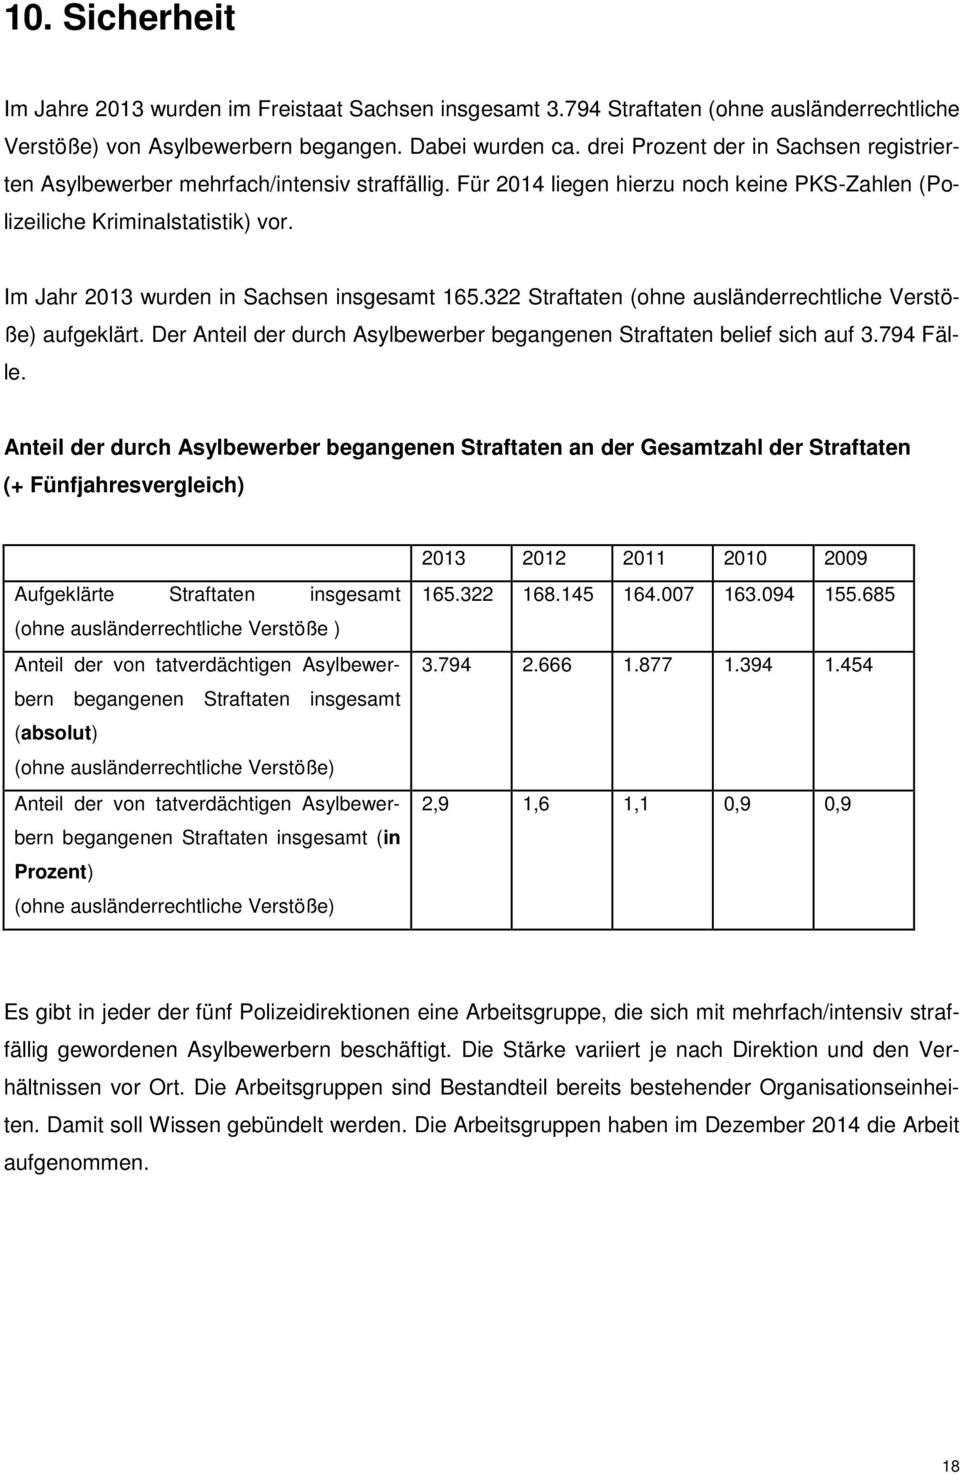 Im Jahr 2013 wurden in Sachsen insgesamt 165.322 Straftaten (ohne ausländerrechtliche Verstöße) aufgeklärt. Der Anteil der durch Asylbewerber begangenen Straftaten belief sich auf 3.794 Fälle.